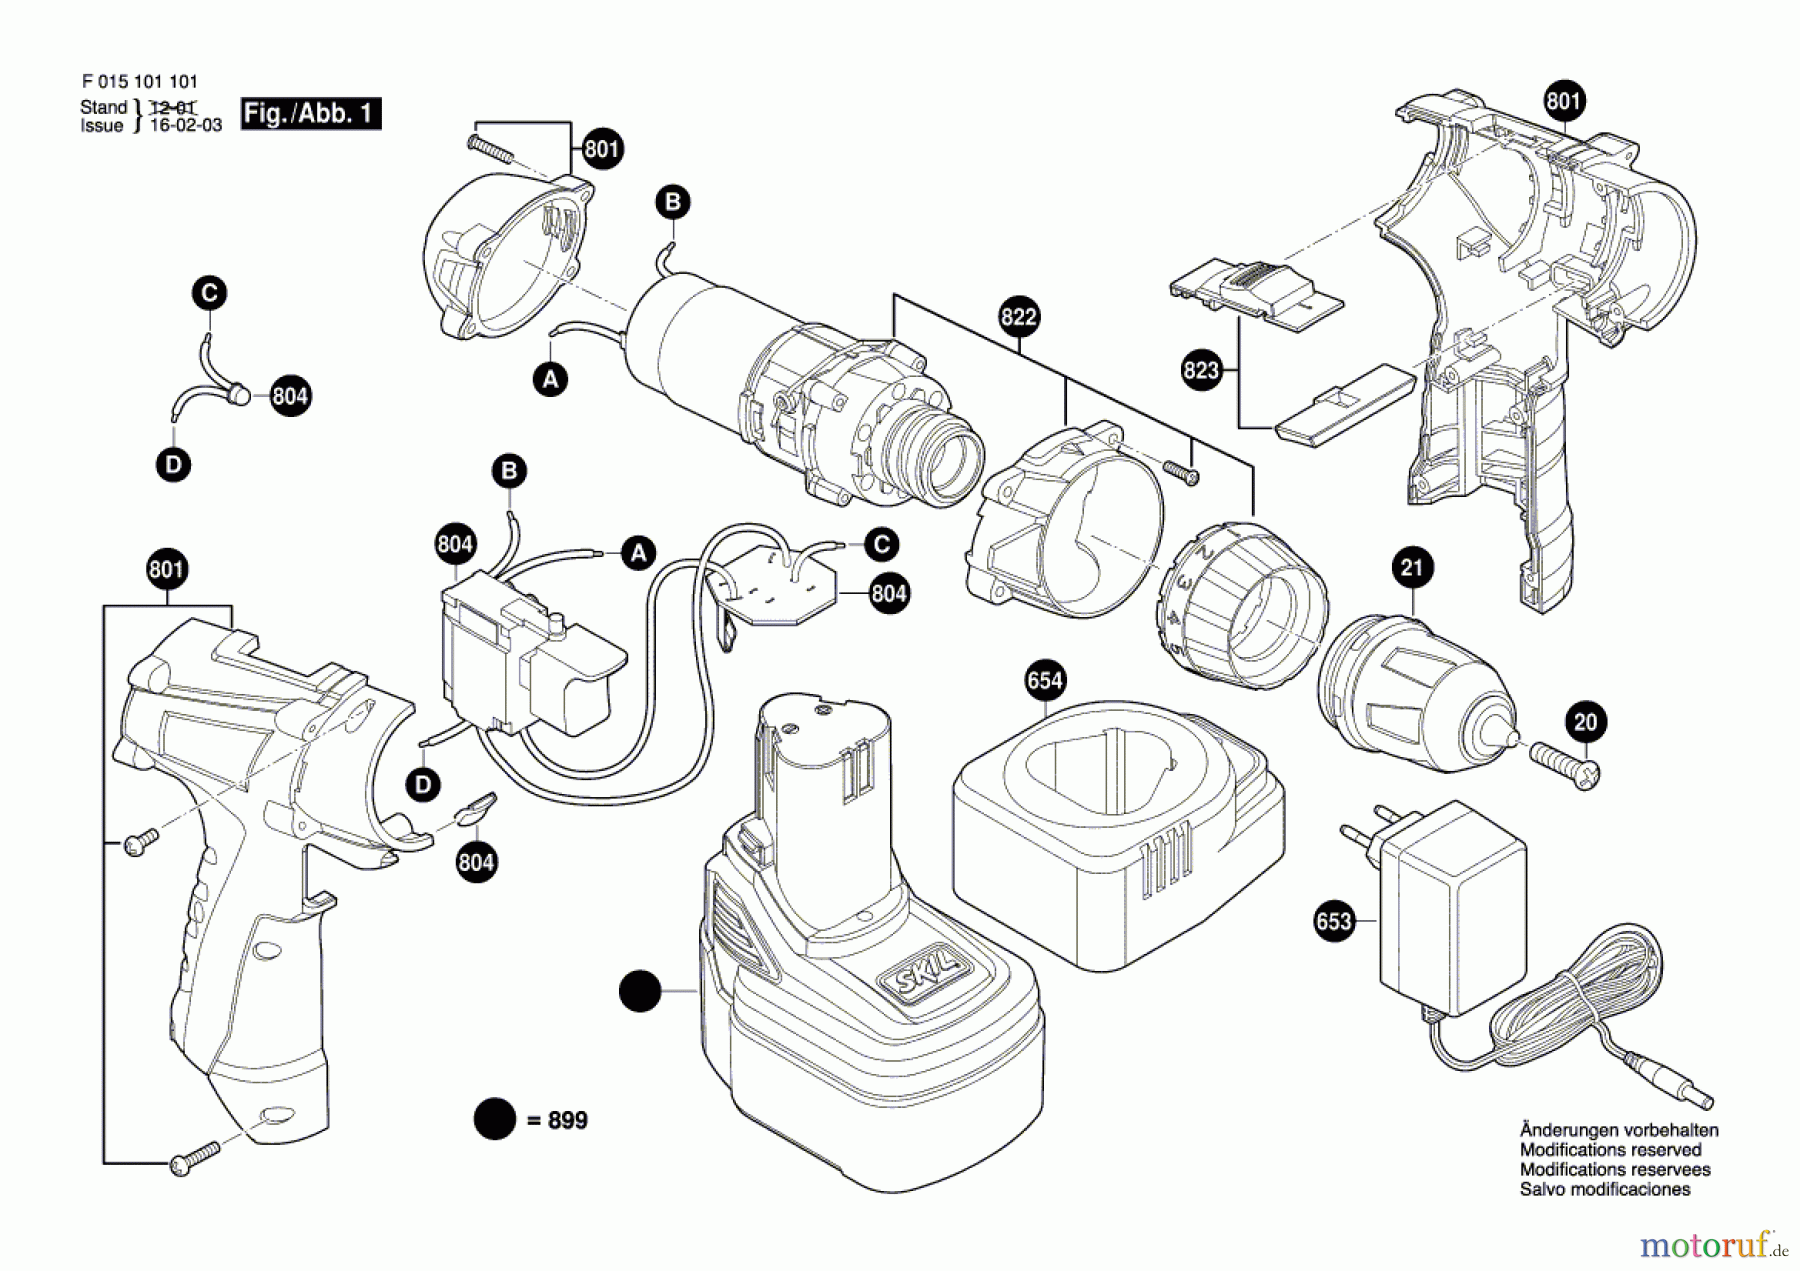  Bosch Werkzeug Combi-Set 1011 Seite 1